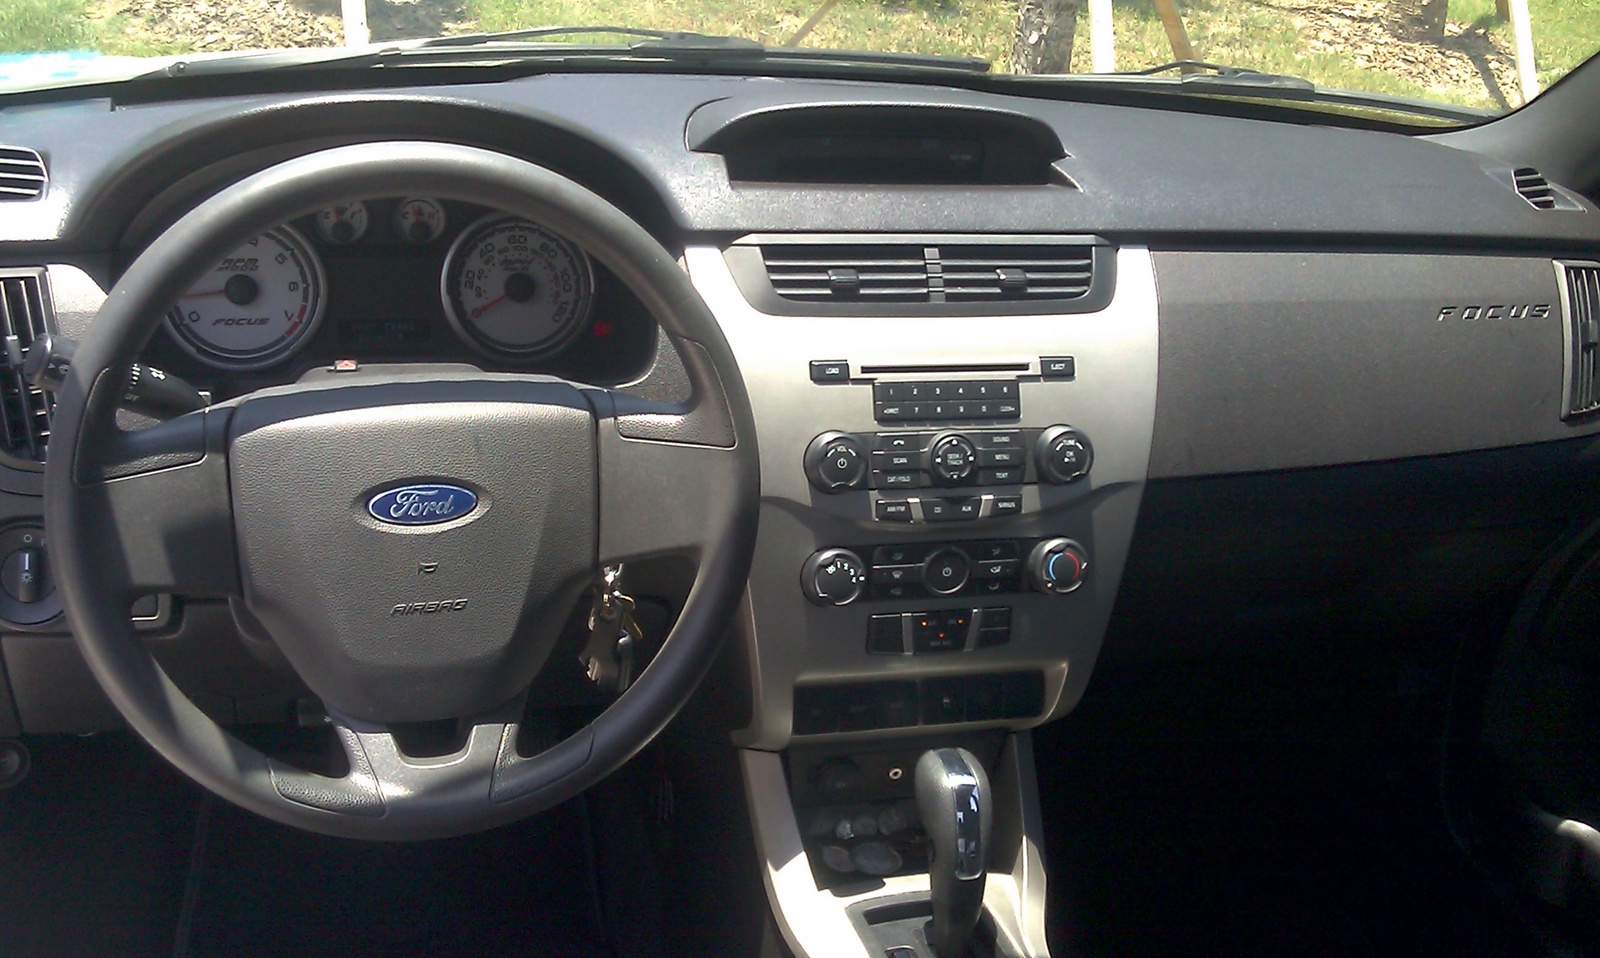 Ford focus trim levels 2010 #3